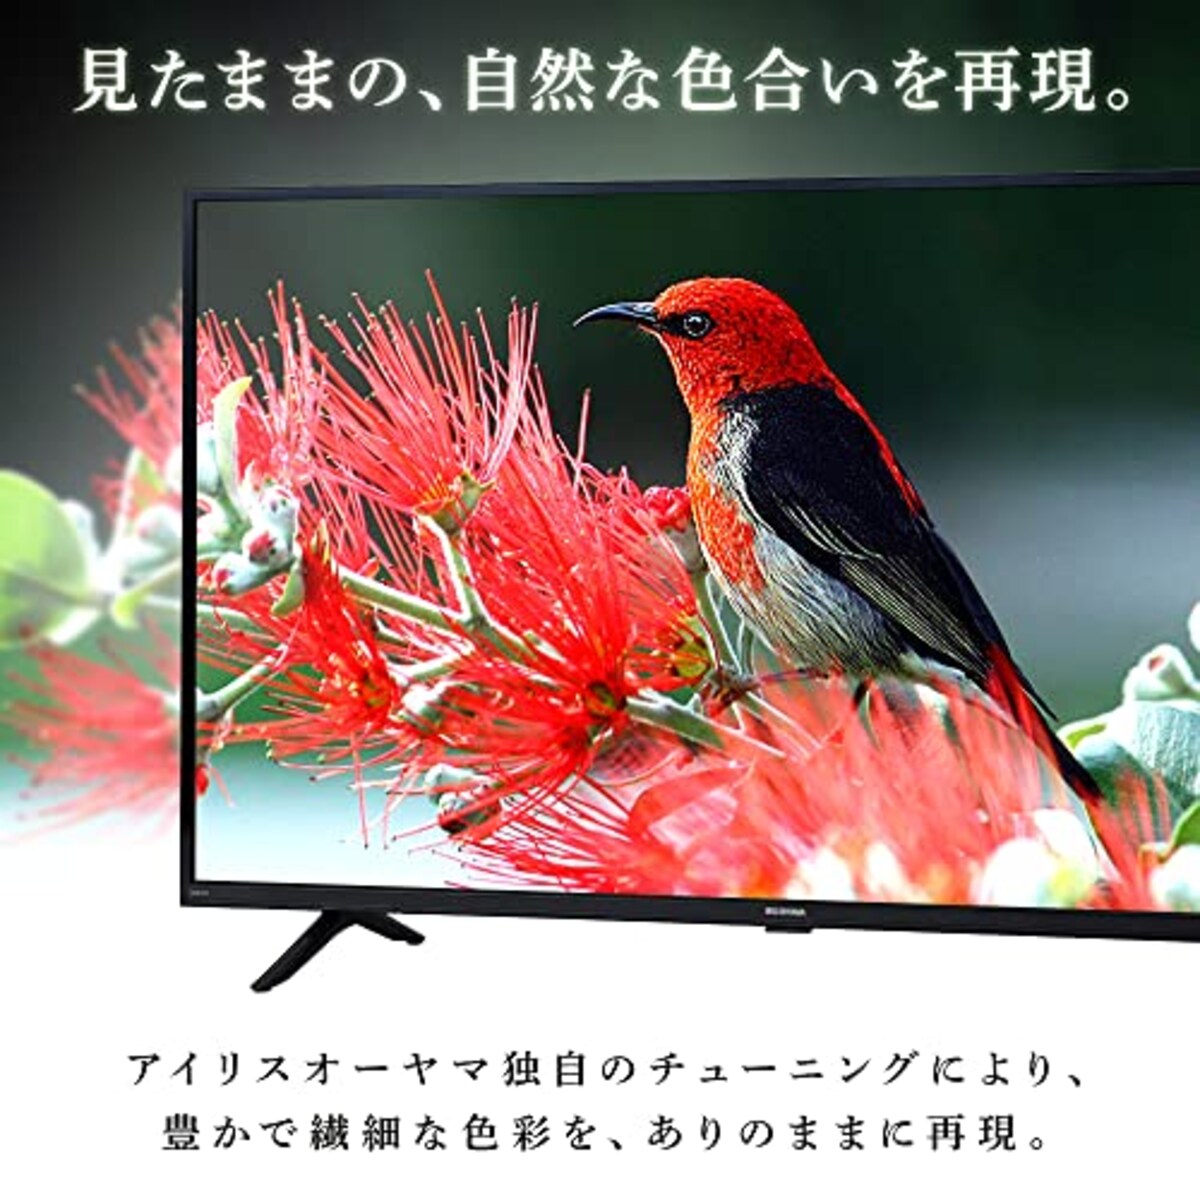  アイリスオーヤマ 24V型 液晶 テレビ 24WB10PB 2022年モデル Wチューナー 裏番組同時録画 外付けHDD録画対応画像4 